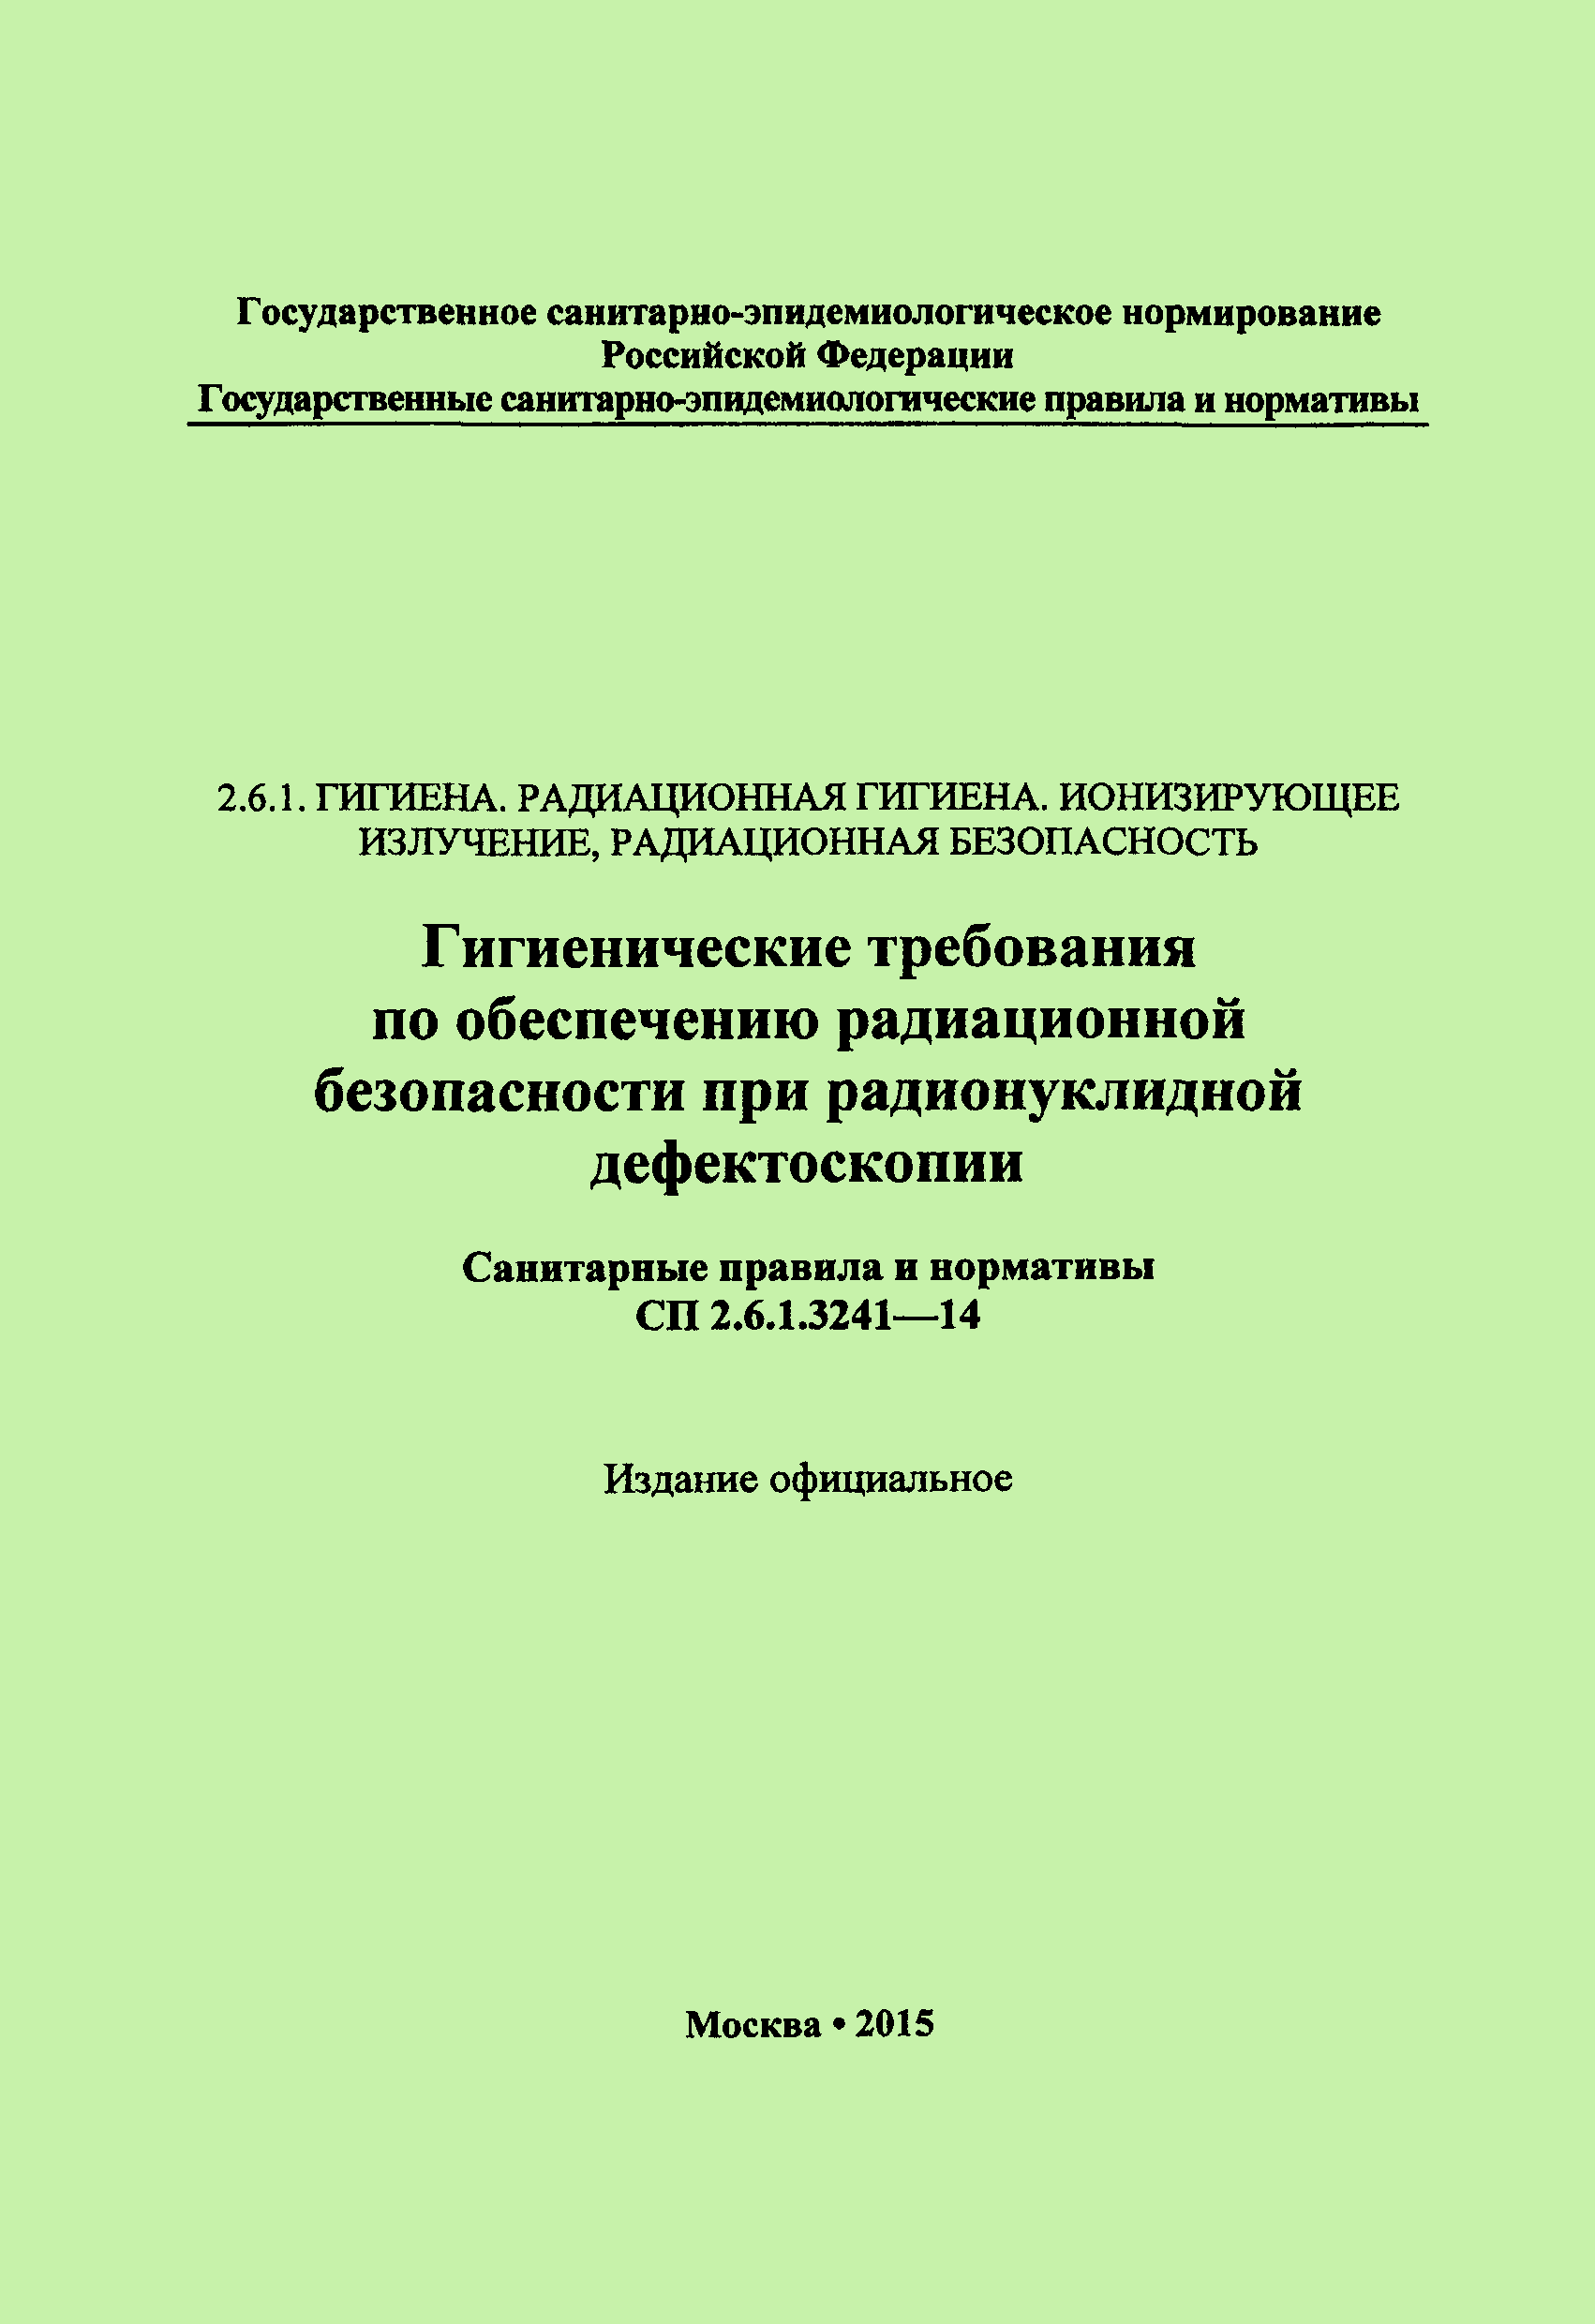 СП 2.6.1.3241-14